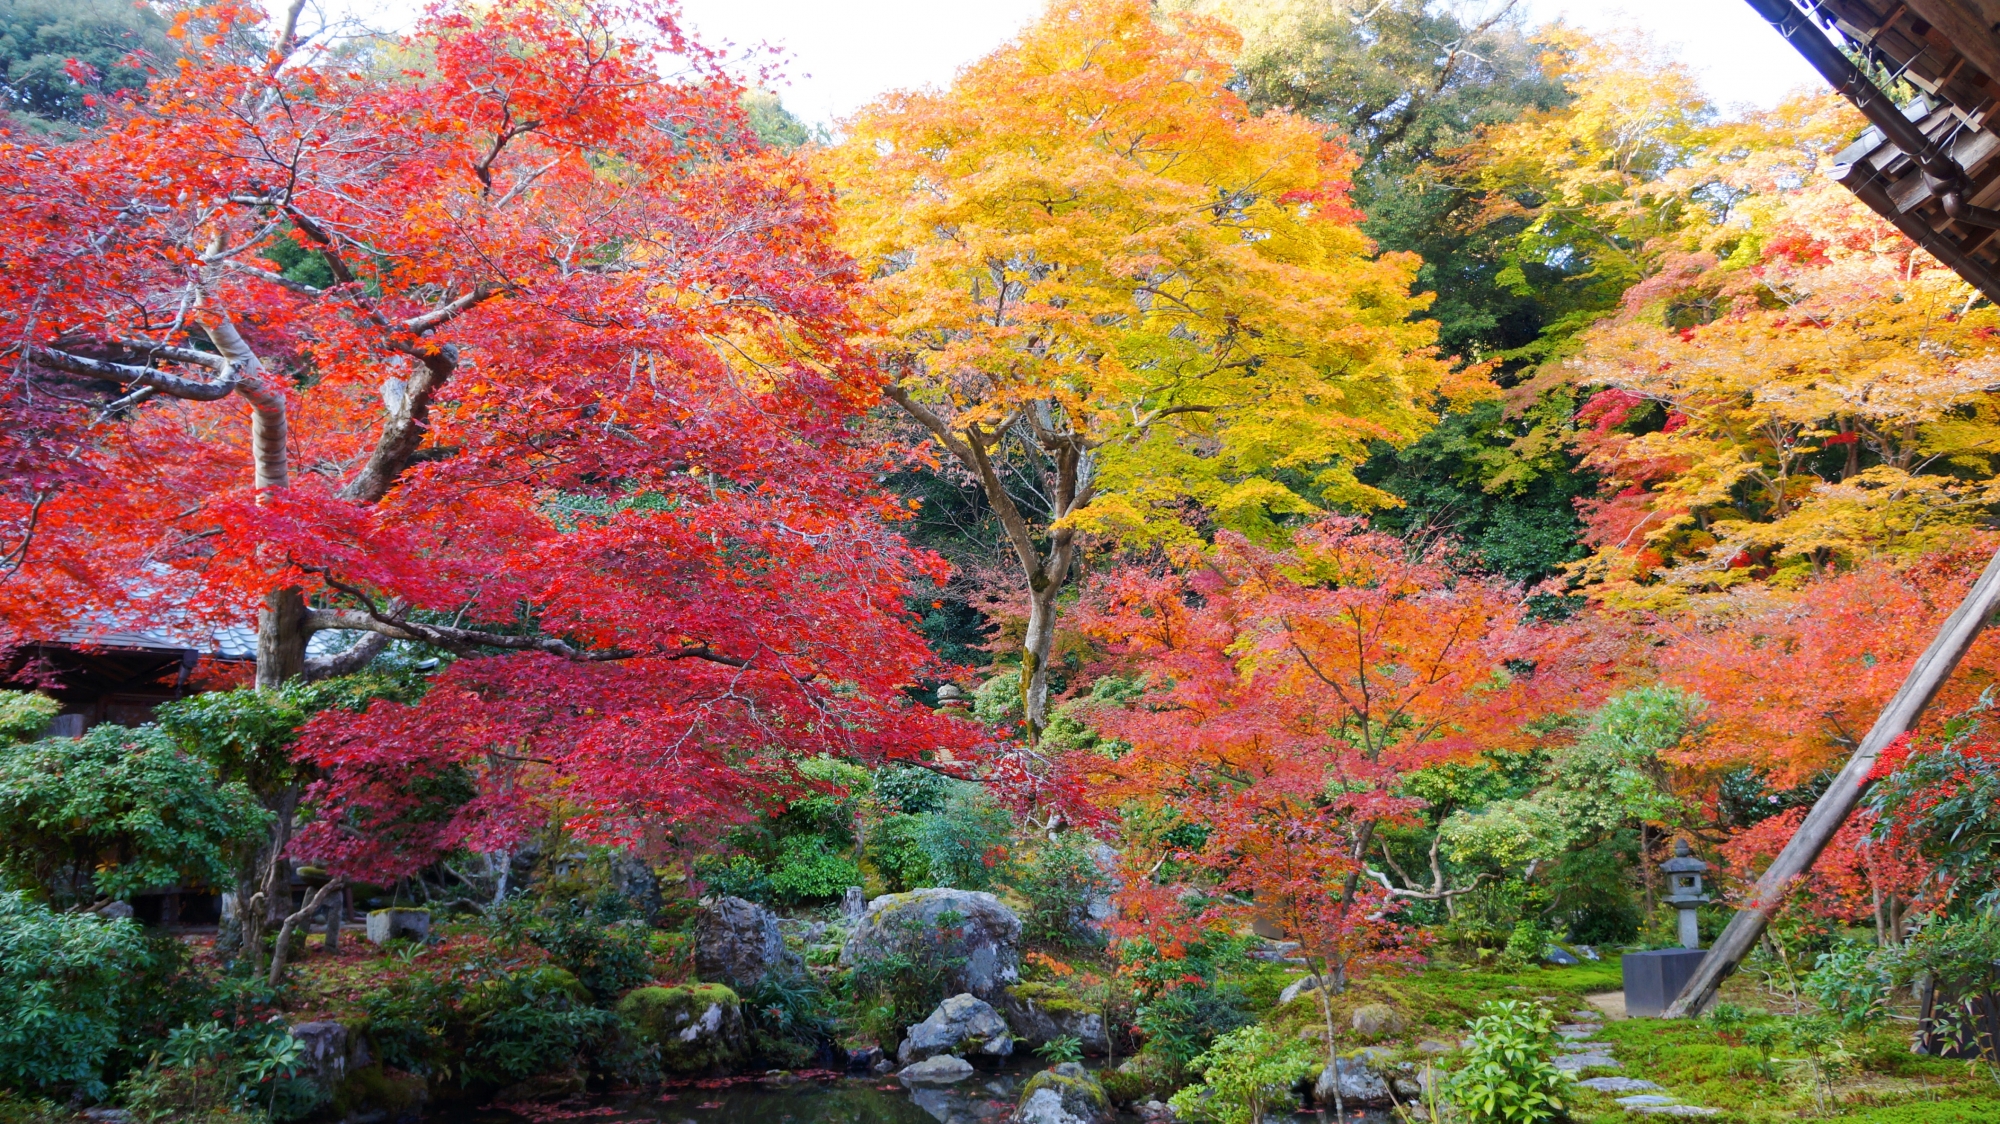 見事な紅葉の溢れる秋の実相院の庭園